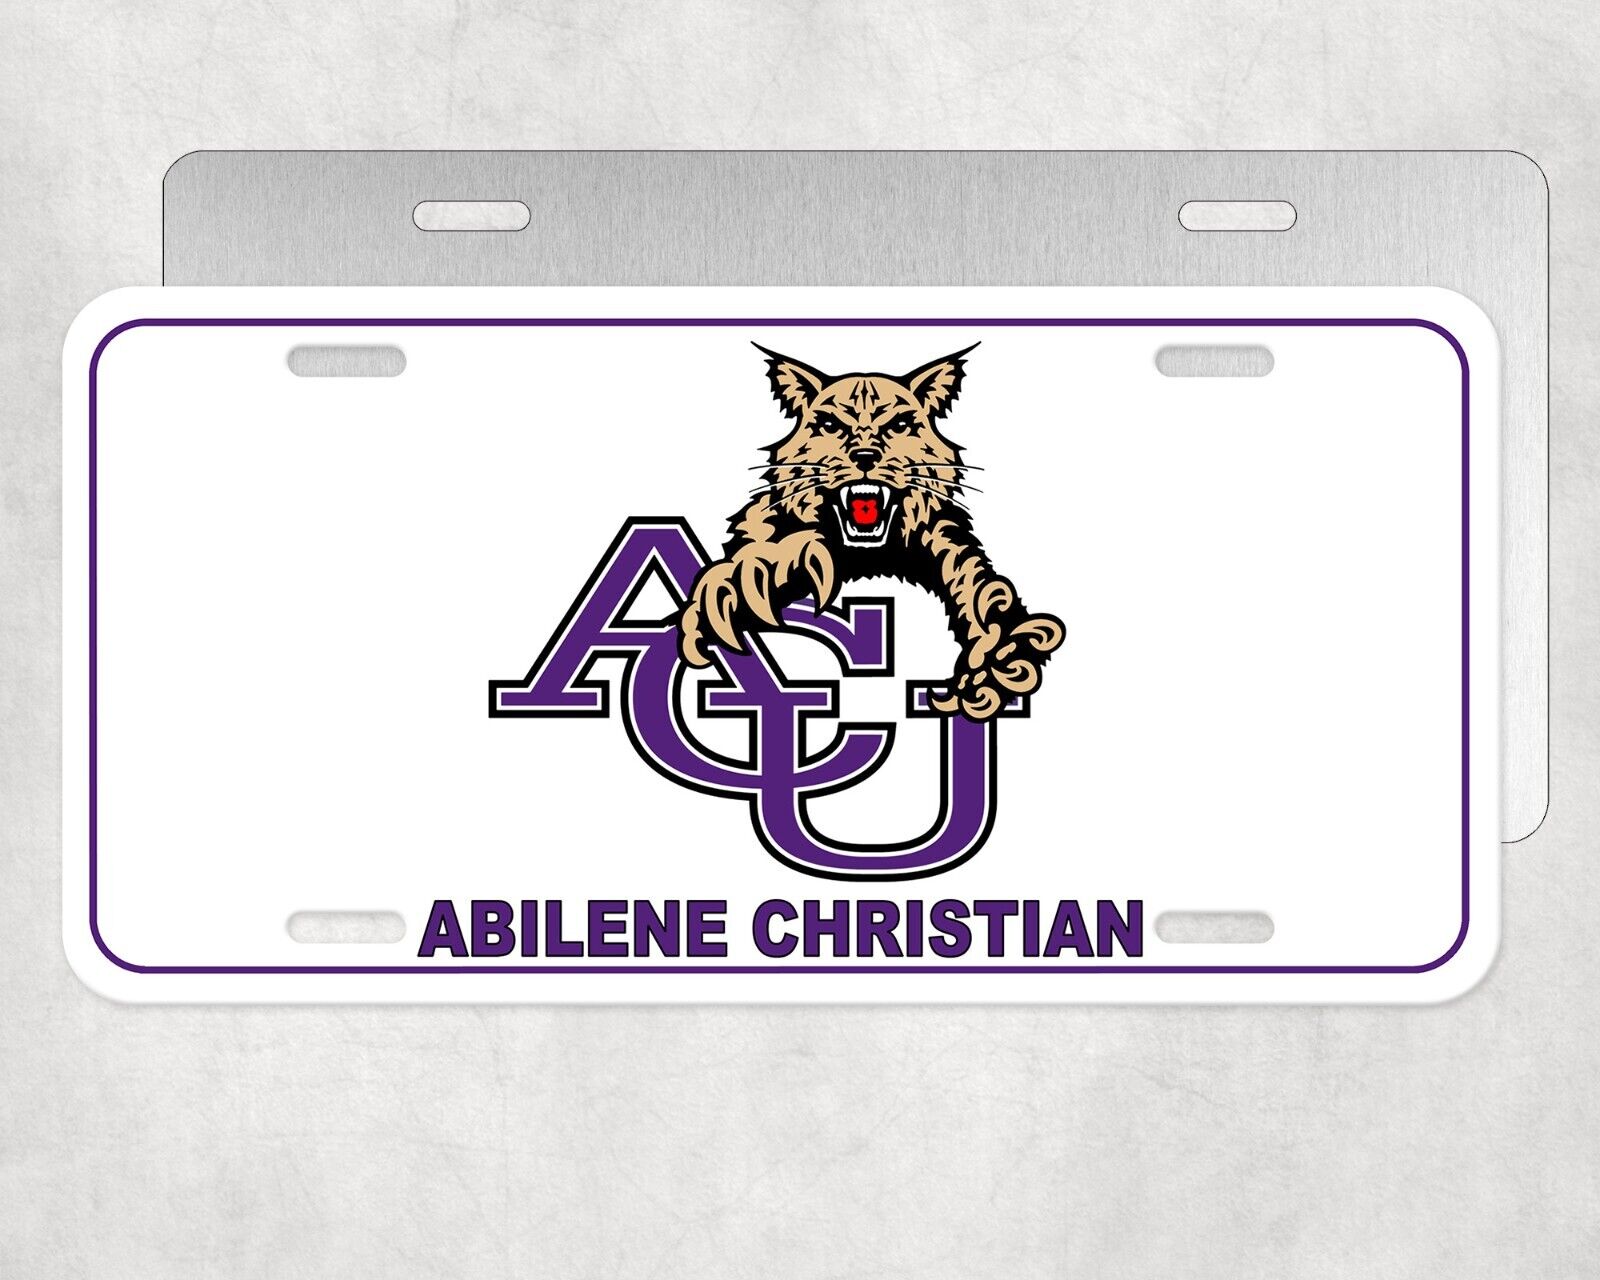 License Plate Tag Abilene Christian University